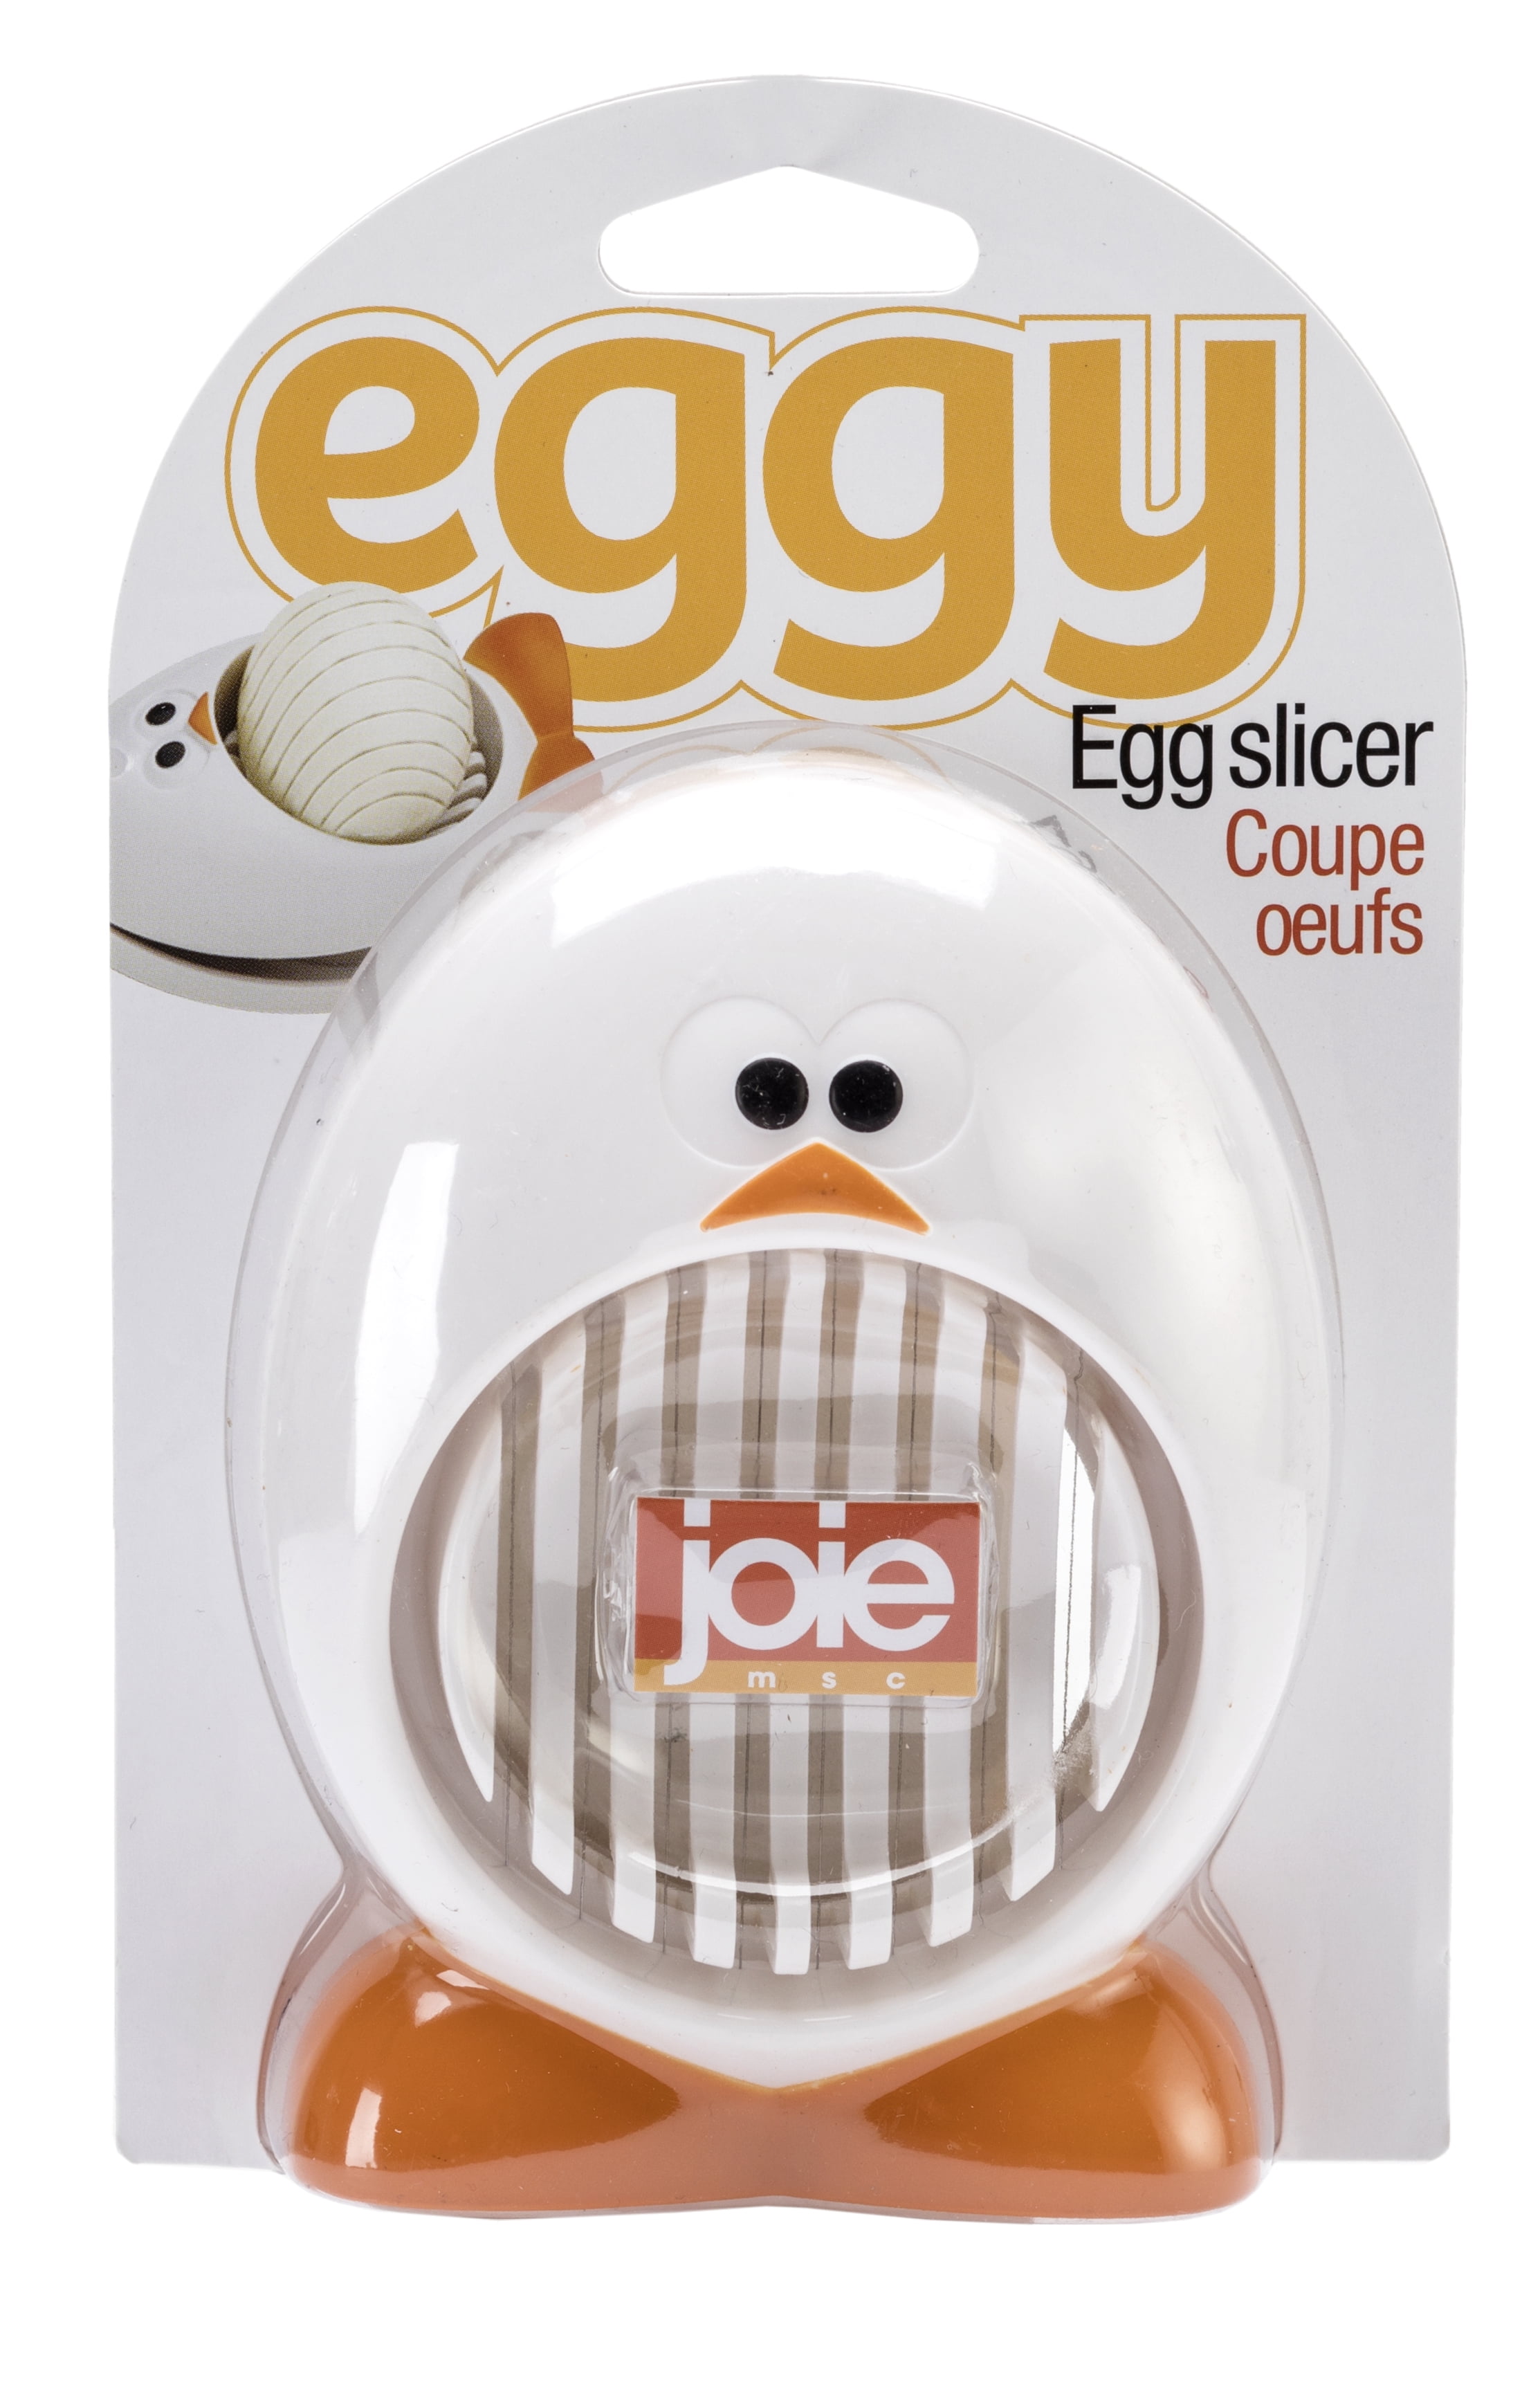 WEDGEY EGG SLICER – Eggshells Kitchen Co.